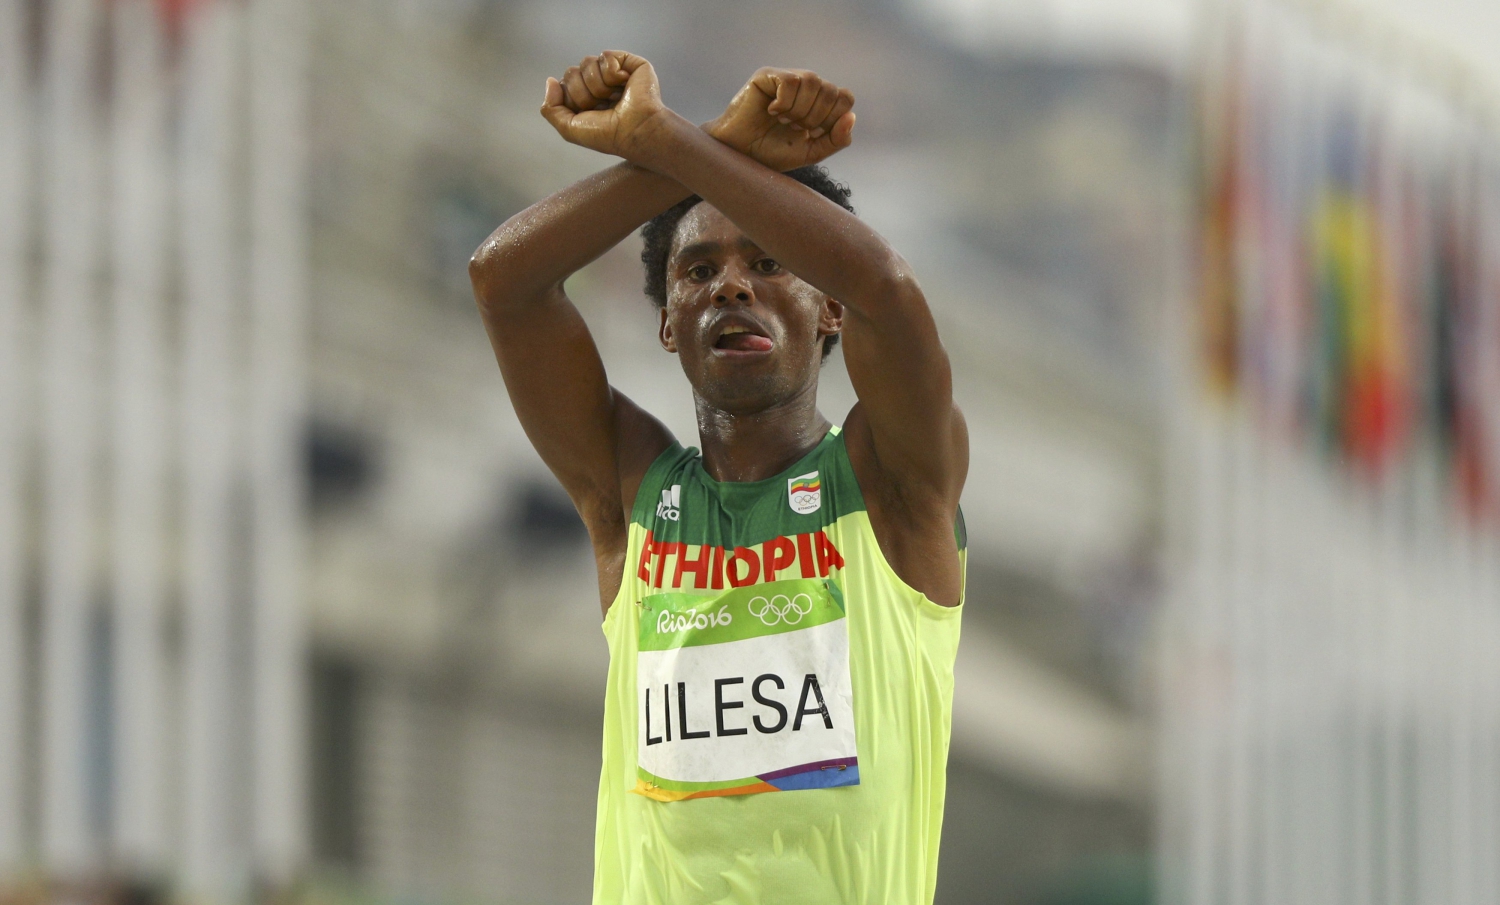 El medallista etíope que visibilizó la represión de los oromo no quiere abandonar Brasil